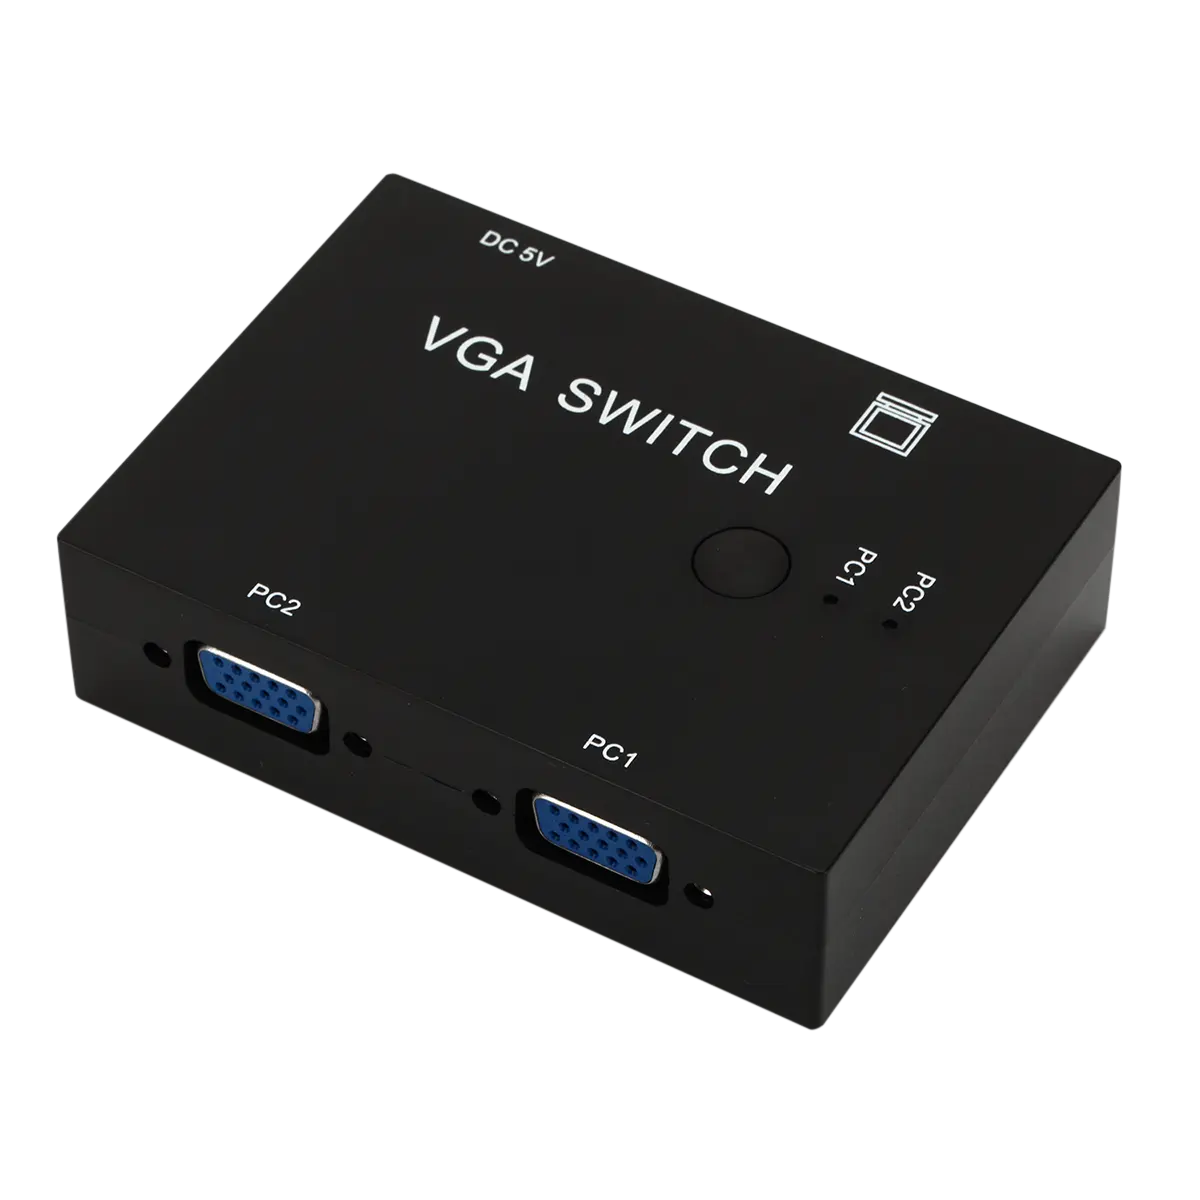 2入力1出力VGAスイッチ2 in 1出力プラグアンドプレイVGA、XVGA、SVGA、UXGAおよびマルチシンクディスプレイスイッチアダプタースプリッターをサポート